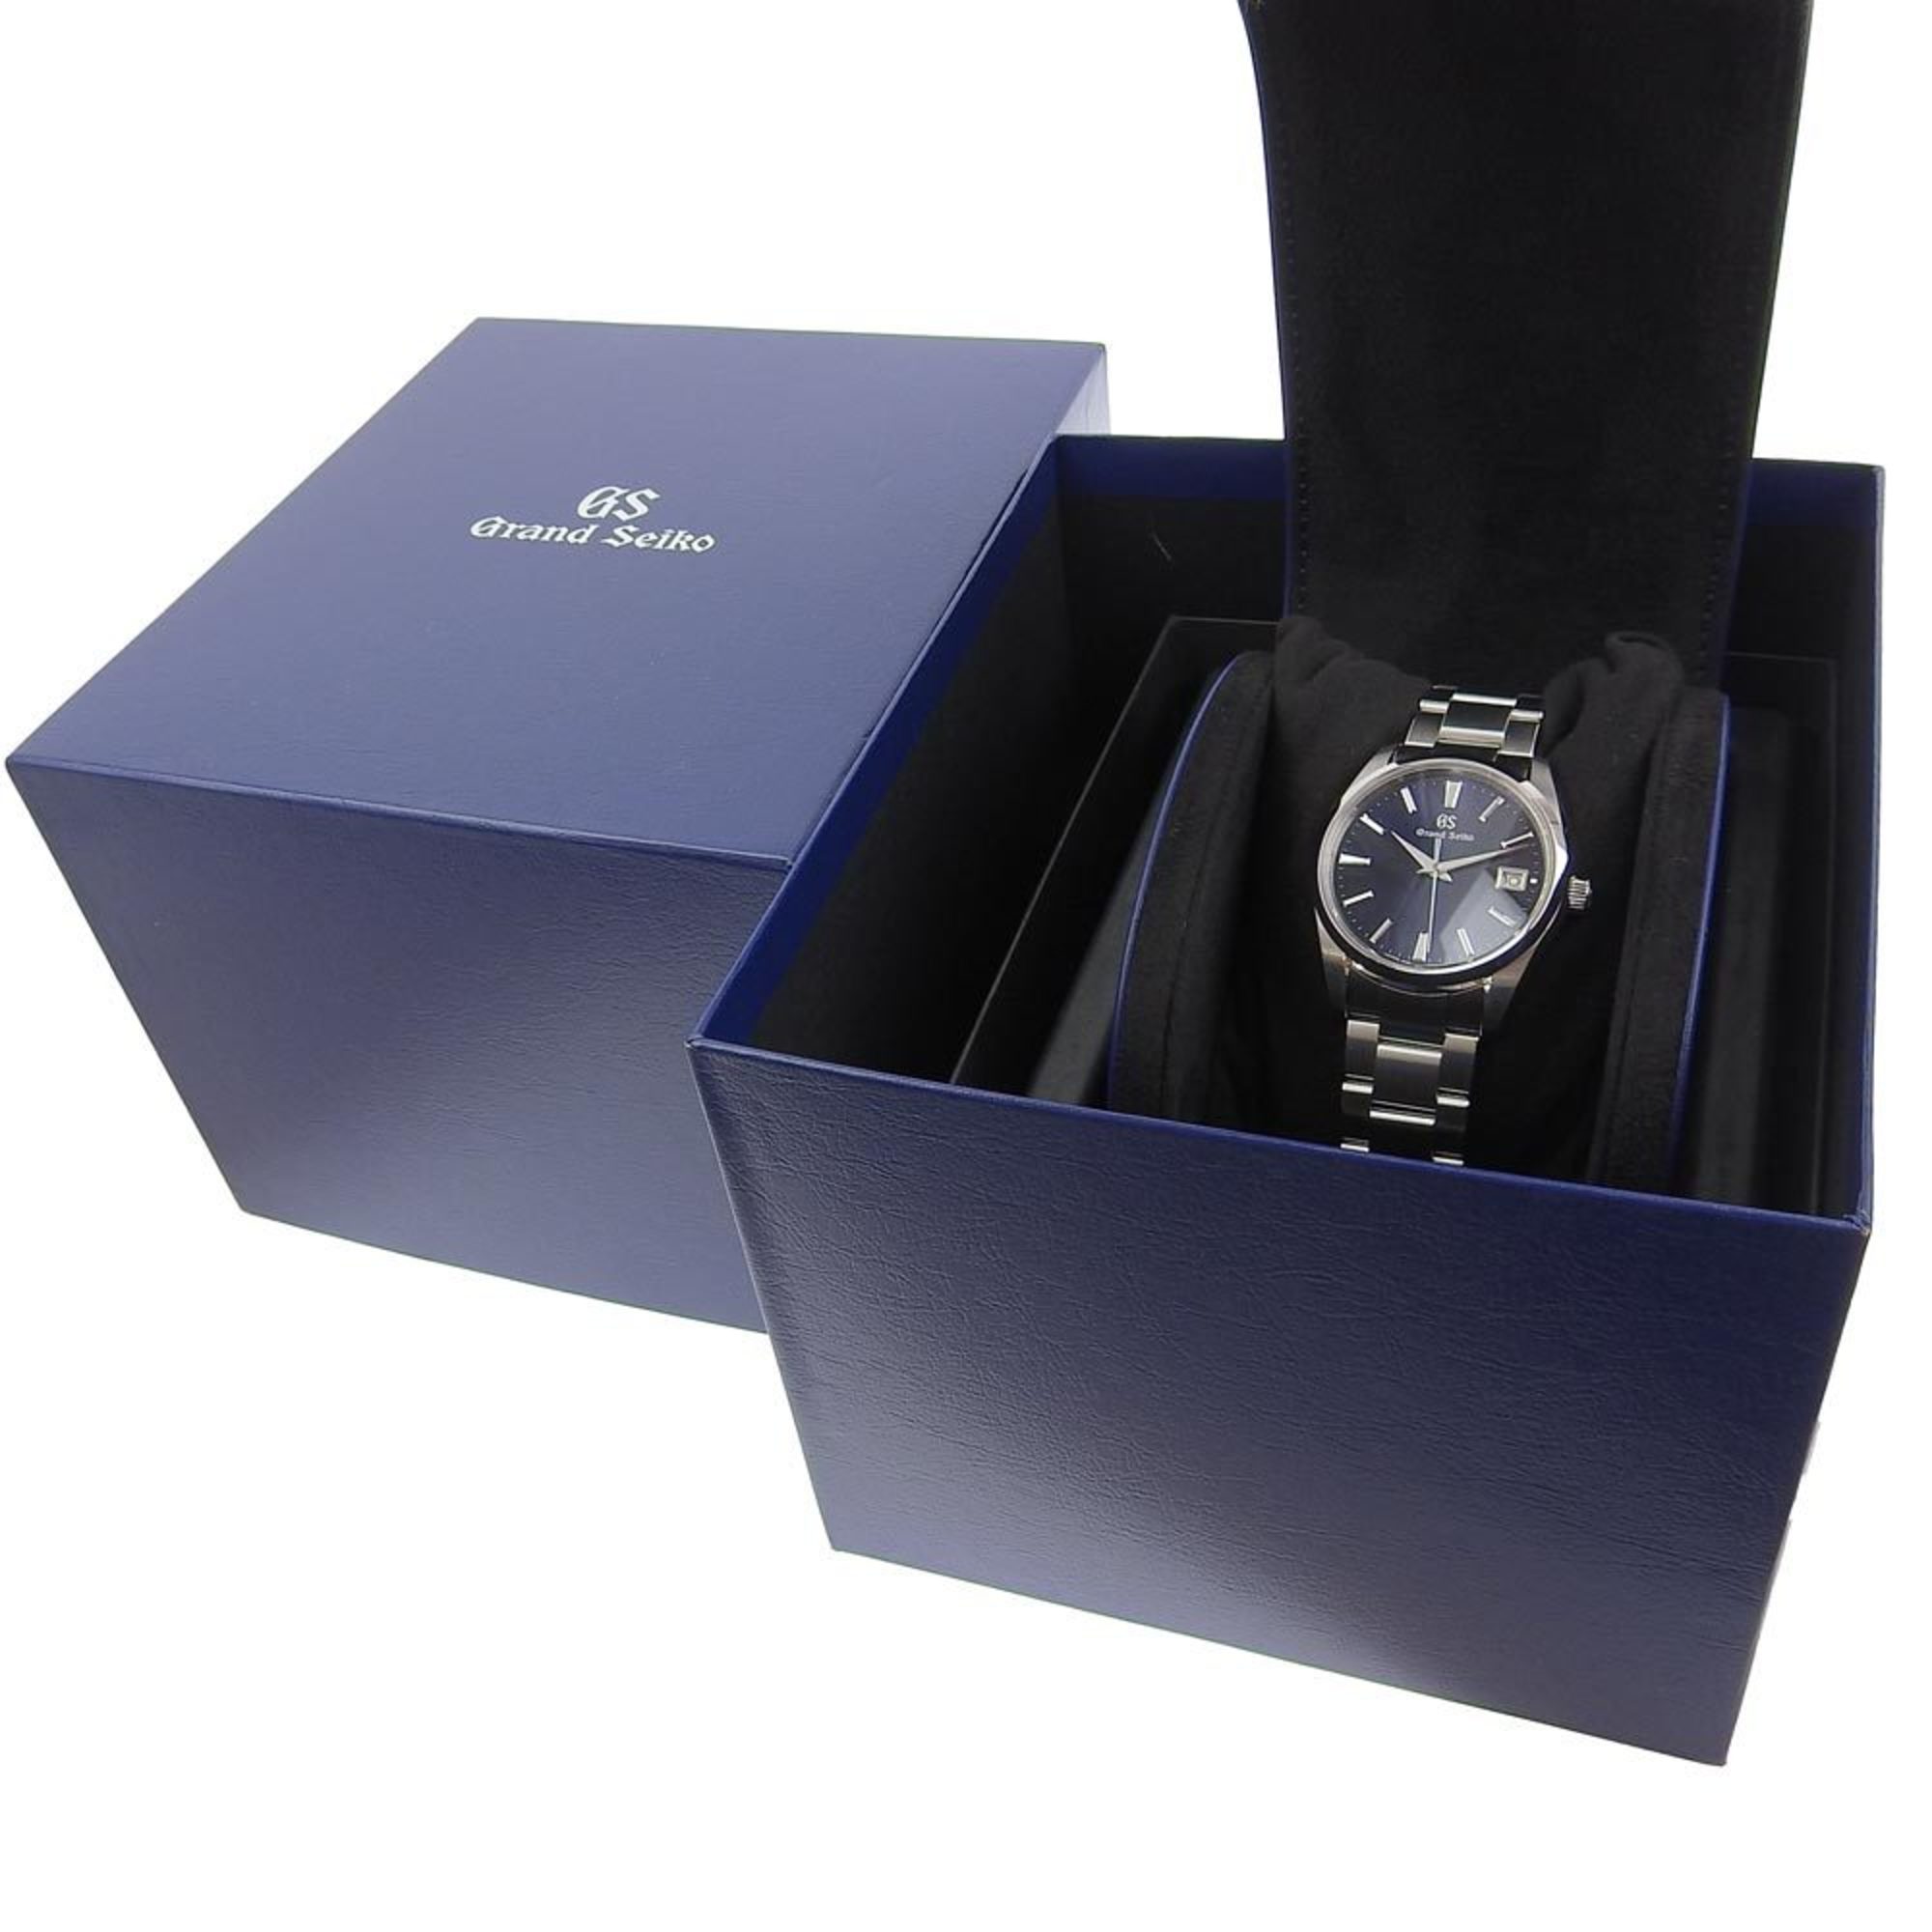 Seiko SEIKO Grand Watch 9F85-0AC0 SBGP013 Stainless Steel Quartz Analog Display Navy Dial Men's I220823044